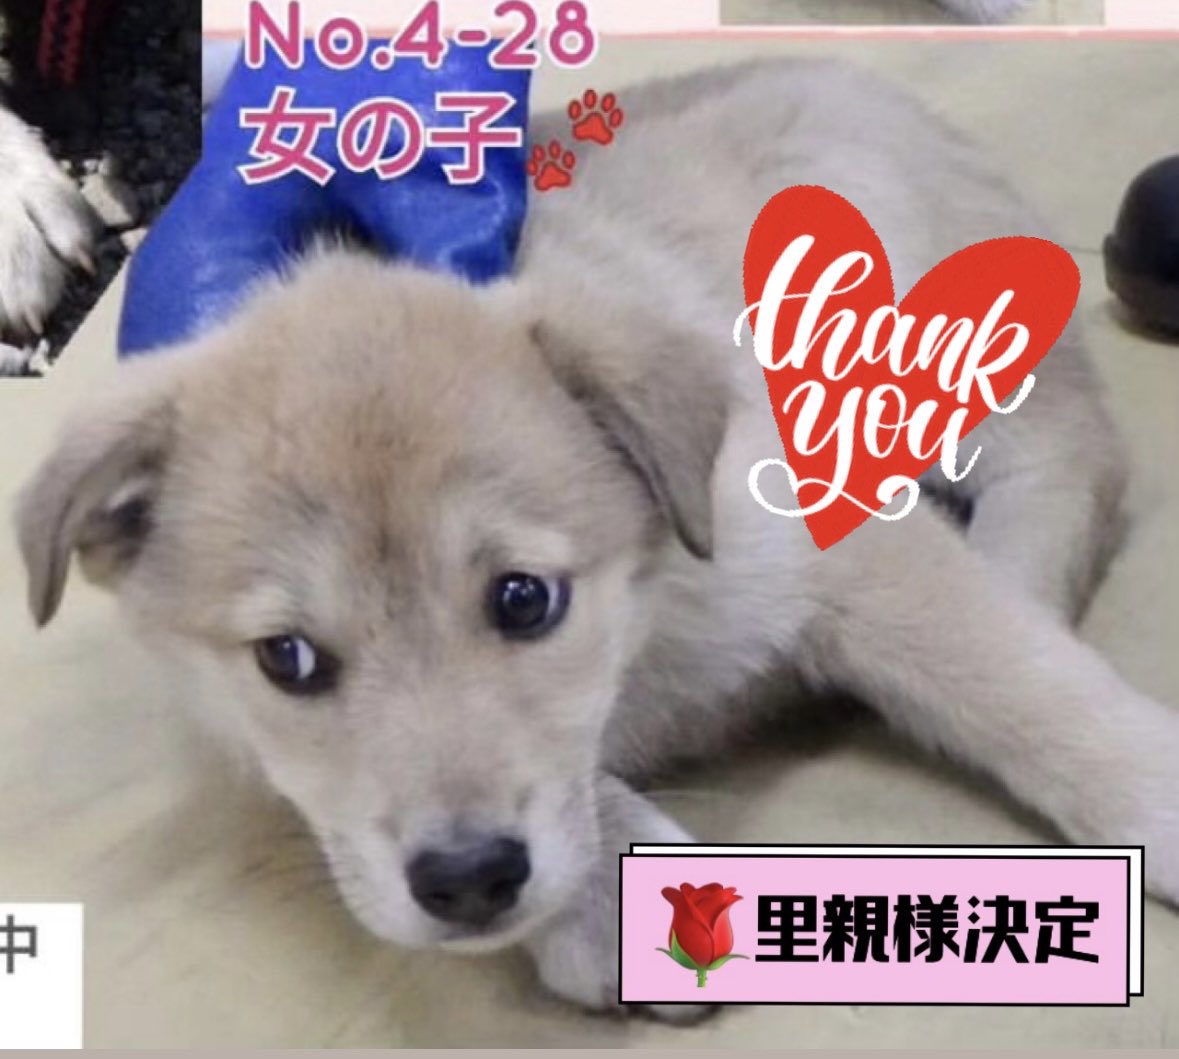 🌹報告します
栃木県動物愛護指導センター収容
3.4ヶ月の子犬の女の子は
里親様決定しました
里親様に感謝申し上げます
兄妹の男の子はボッチになりました
応援してください🍀🙏🏻